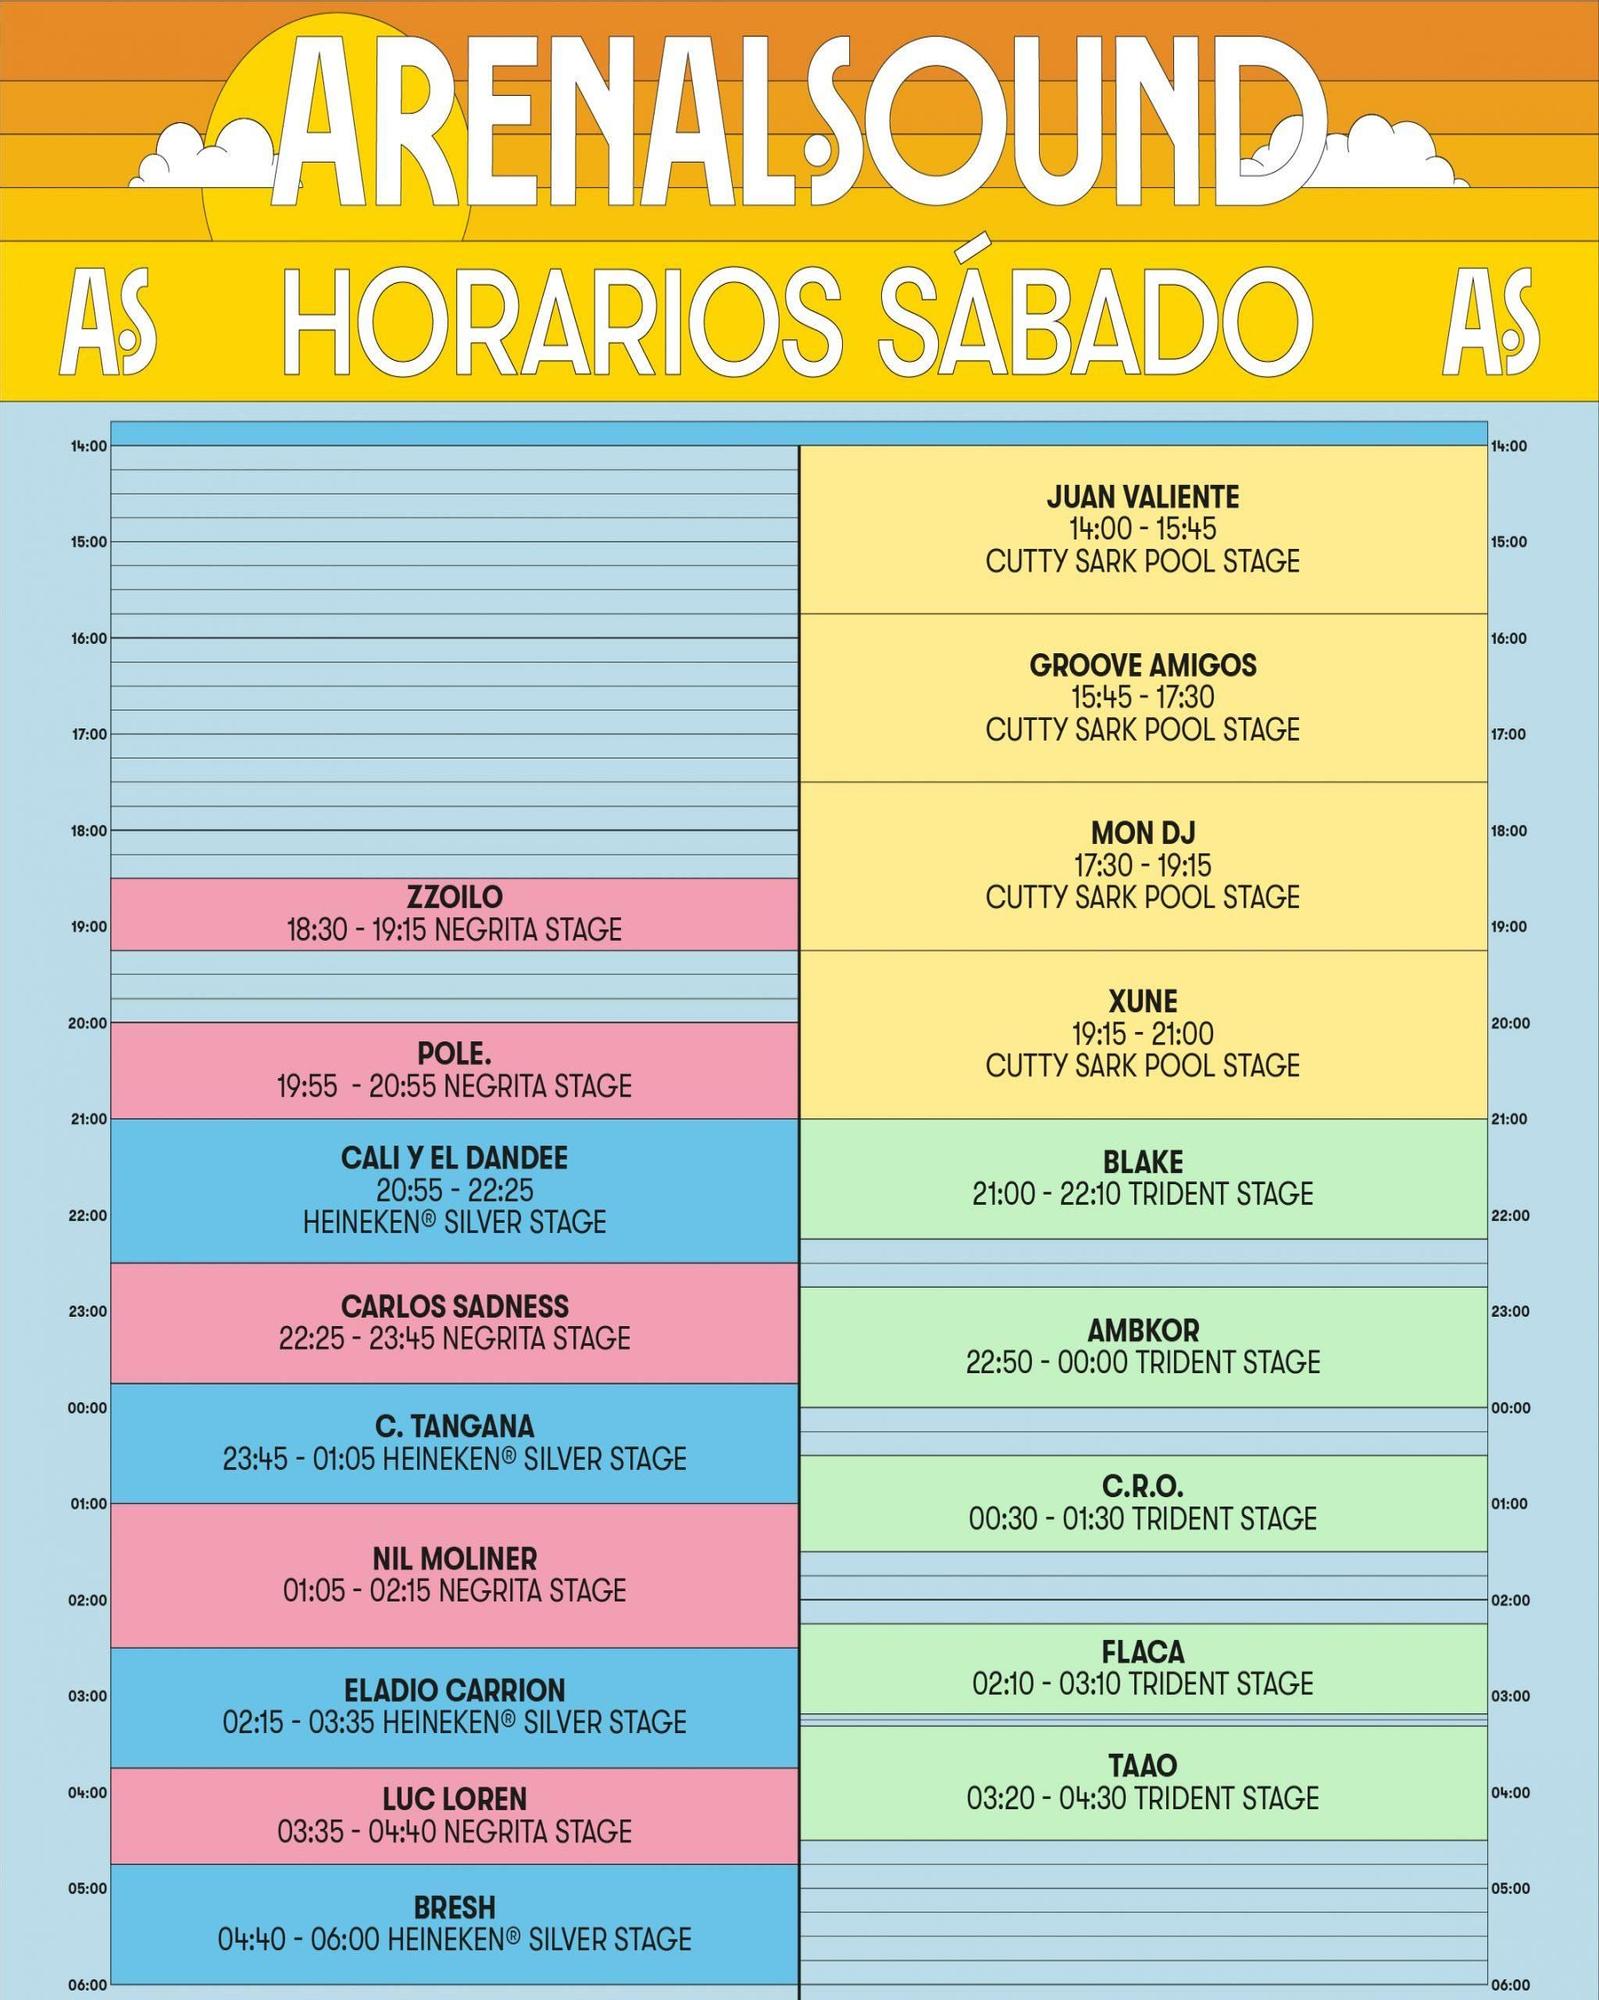 Programación del Arenal Sound para el sábado 6